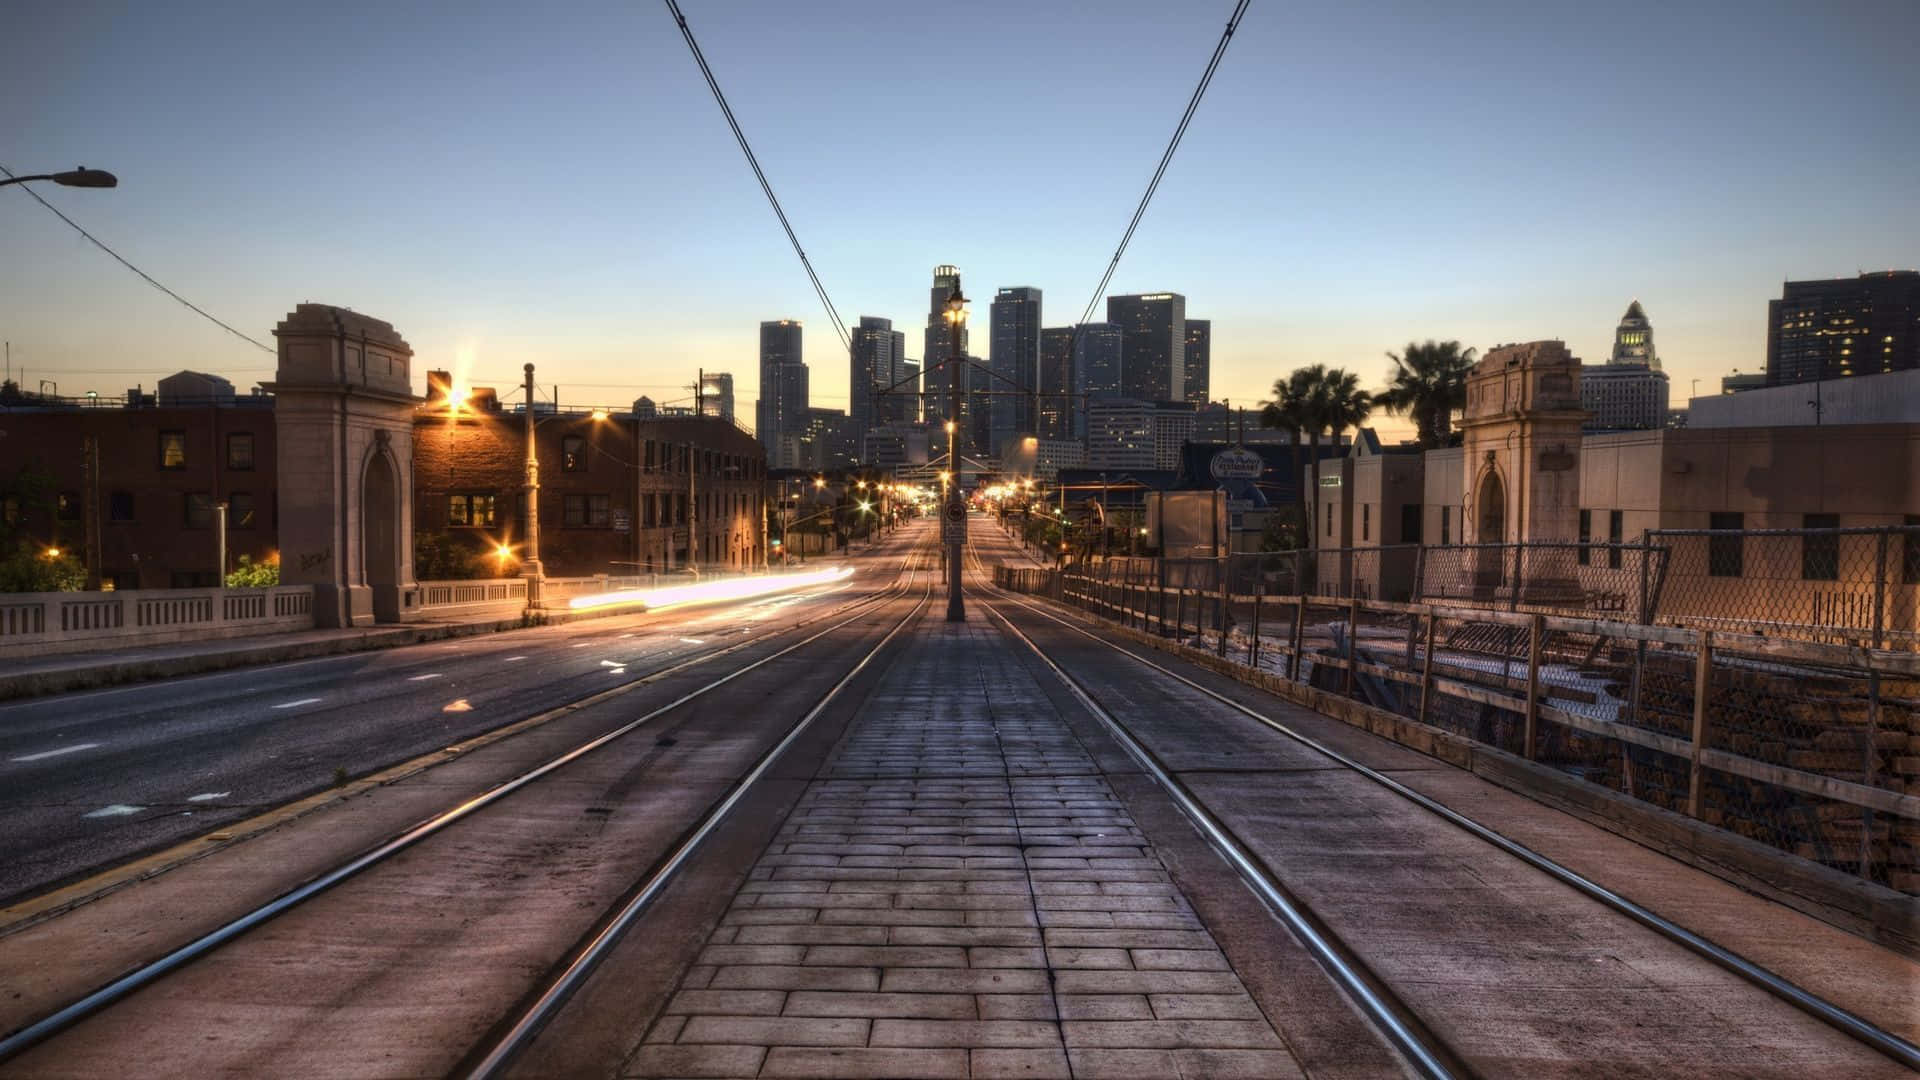 Impresionantepanorámica De La Ciudad De Los Ángeles.